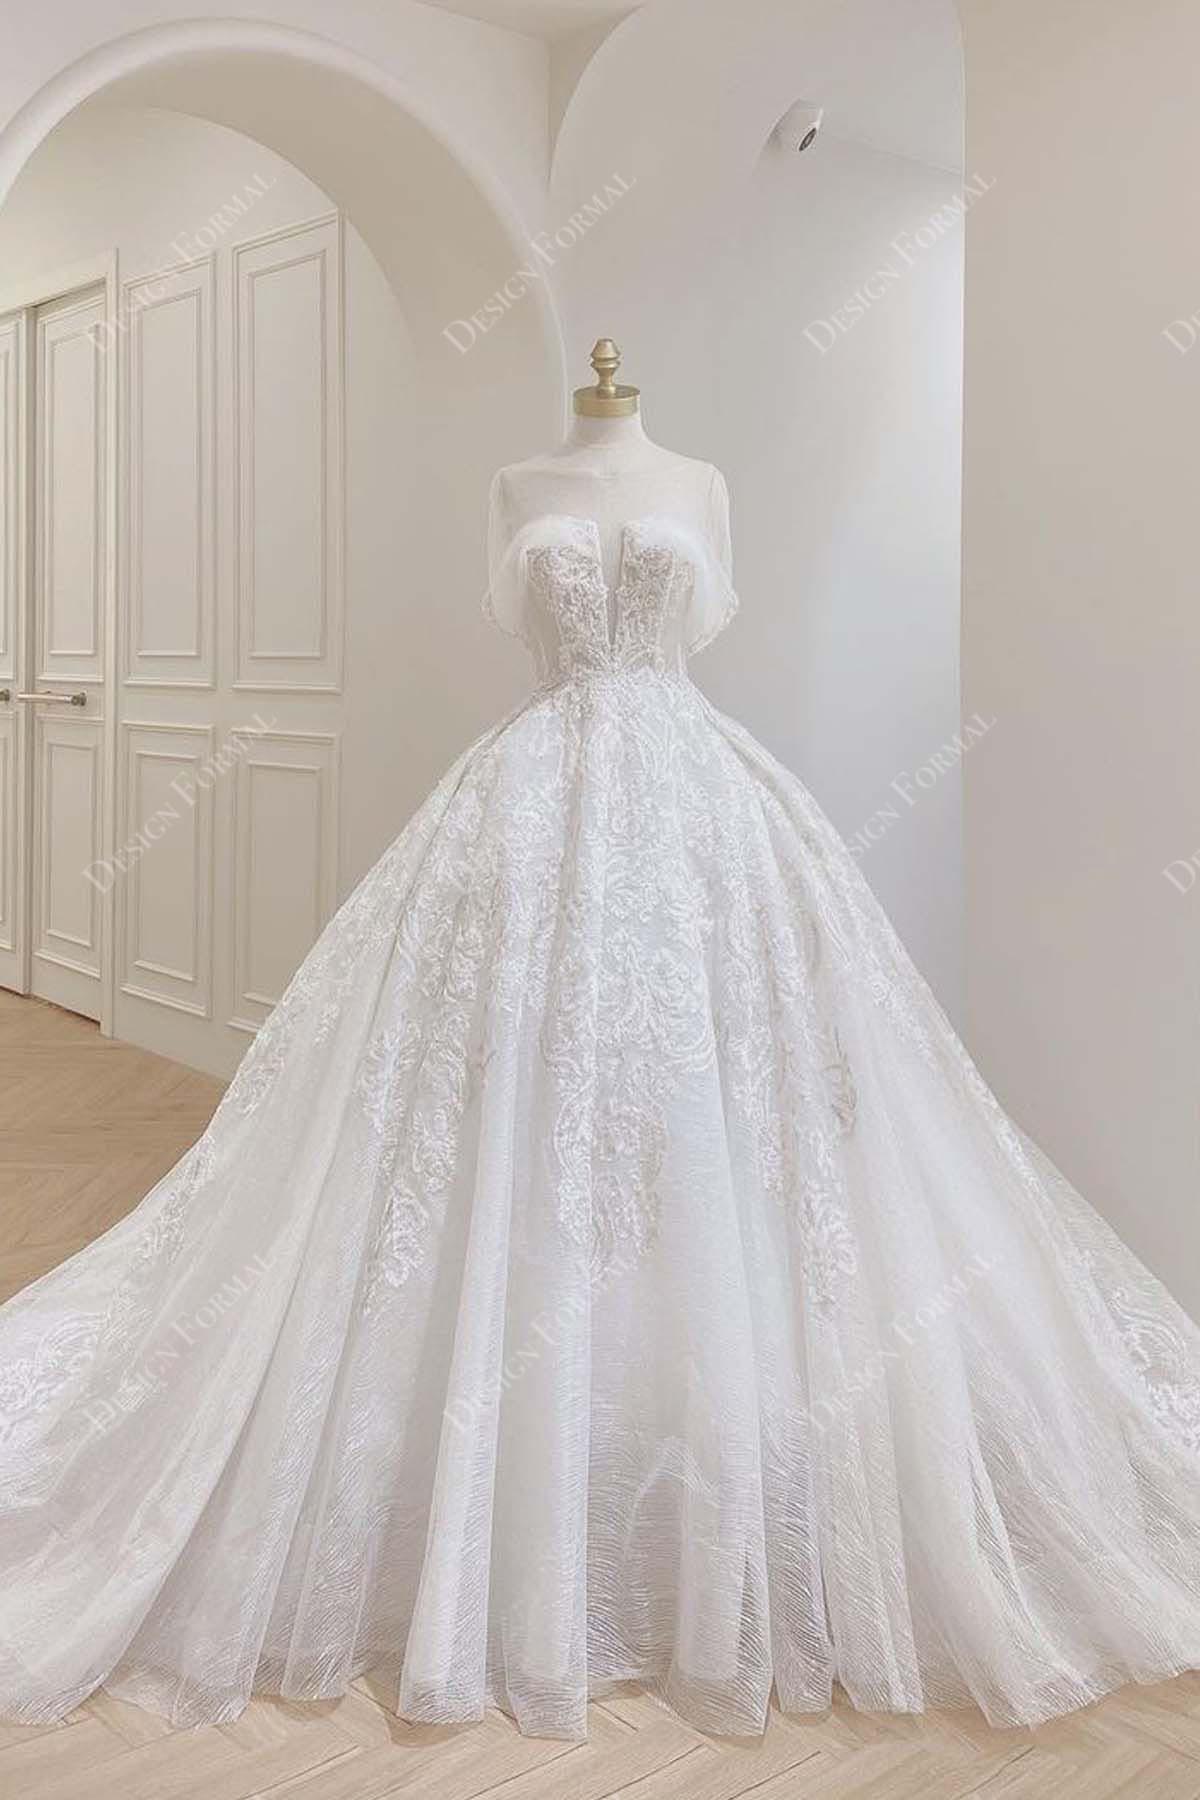 V-neck Off-shoulder Beaded Lace Ball Gown Design Wedding Dress